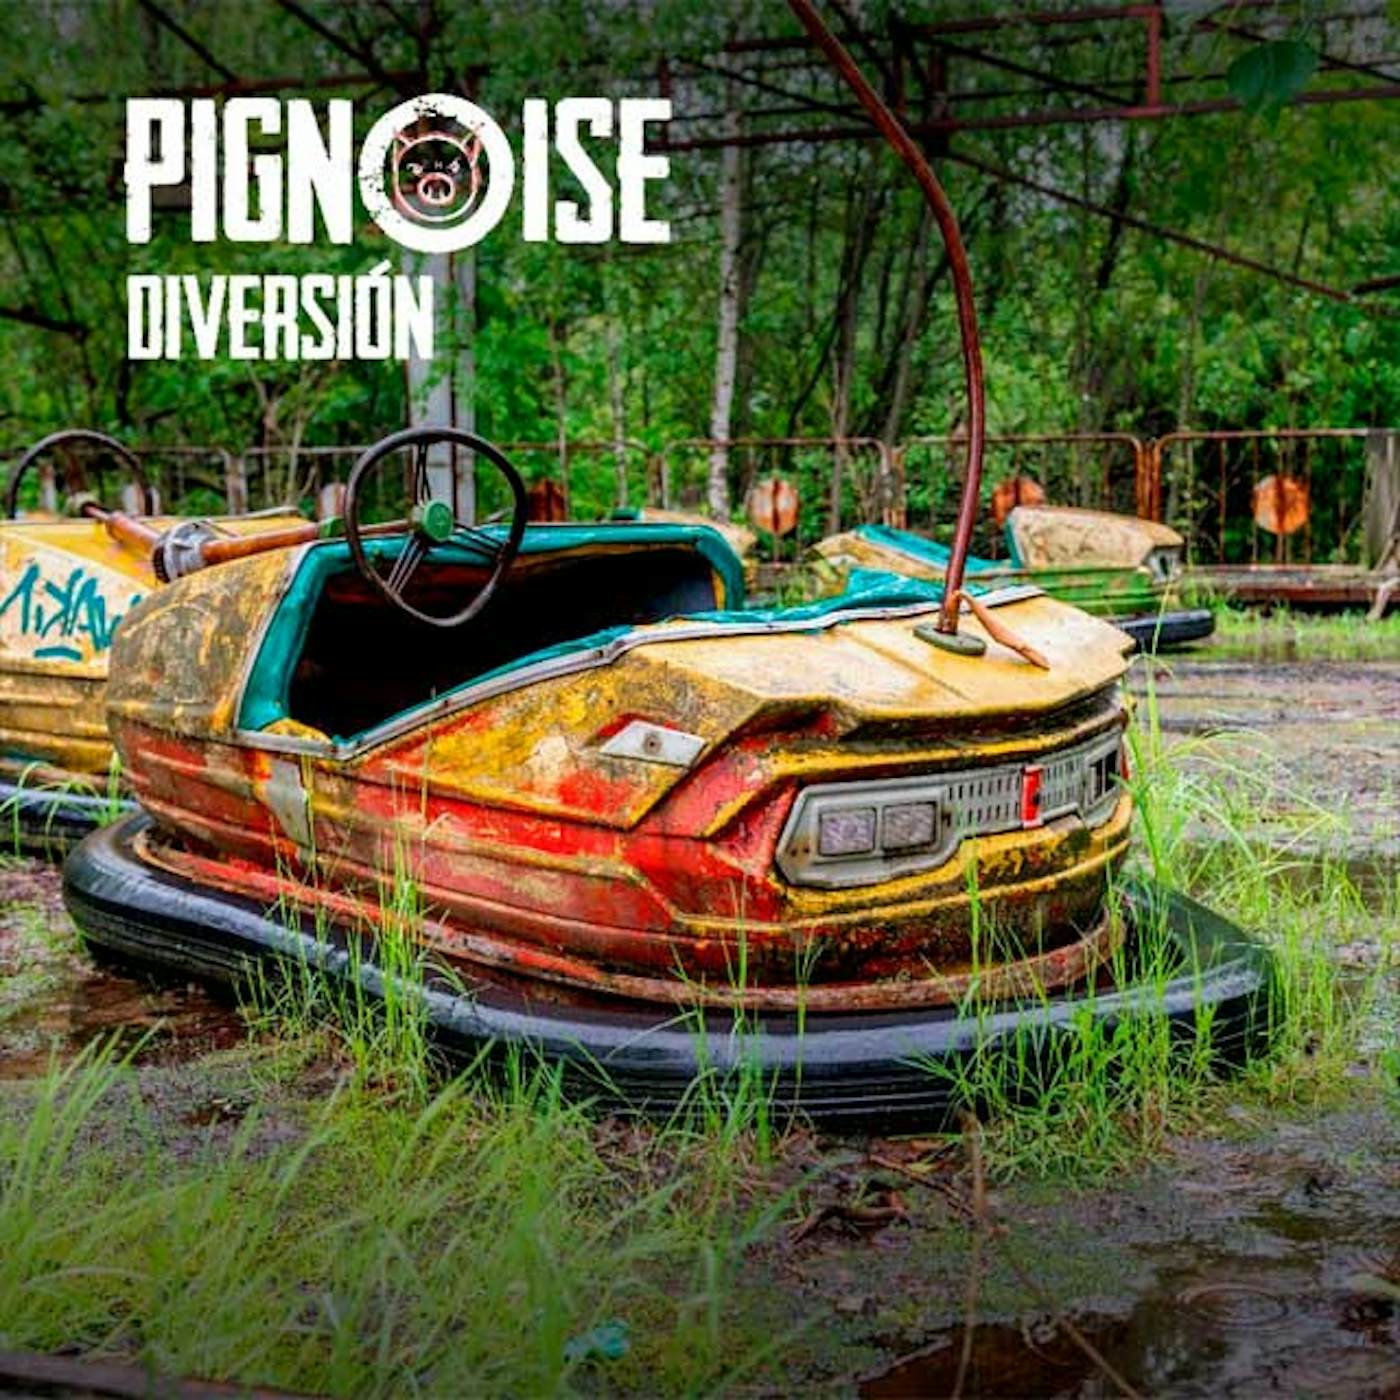 Pignoise DIVERSION CD